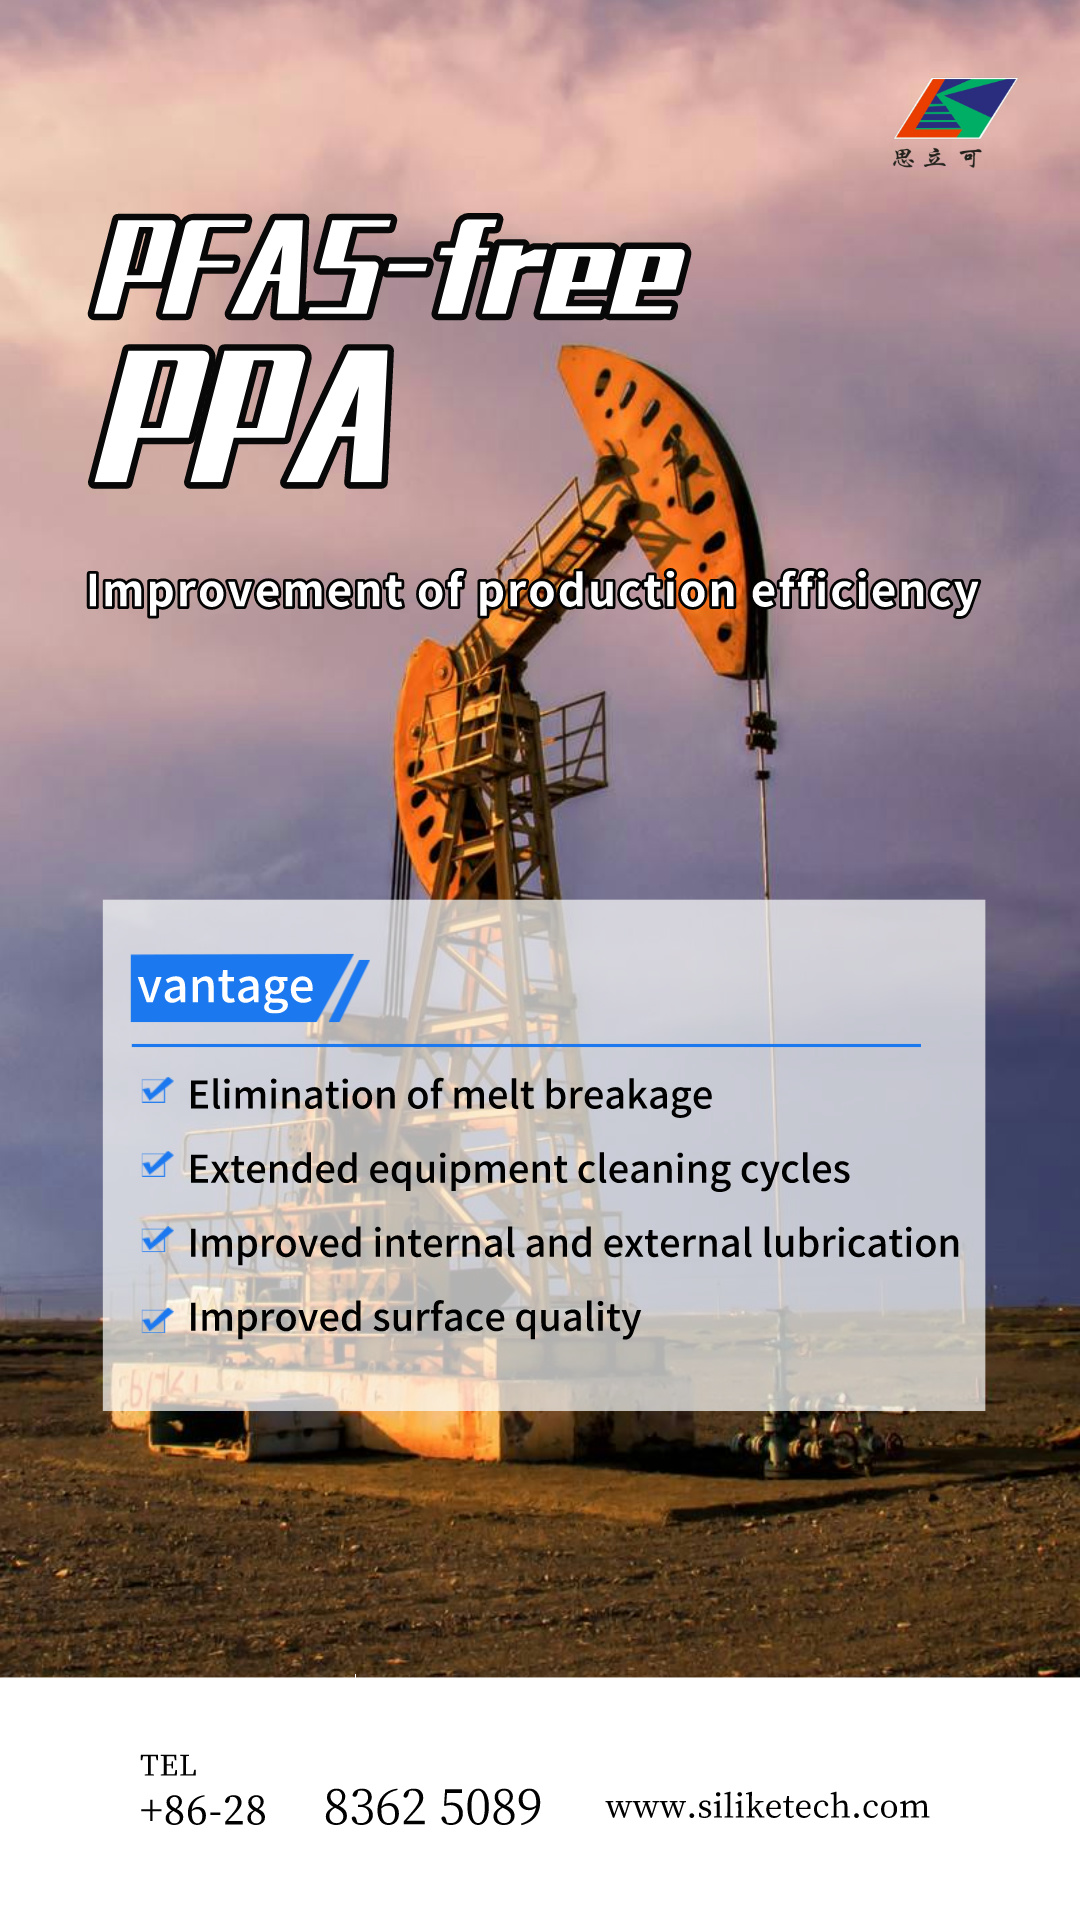 עלייתן של PPA מאסטרbatches ללא PFSA: אלטרנטיבה בת קיימא בתעשייה הפטרוכימית